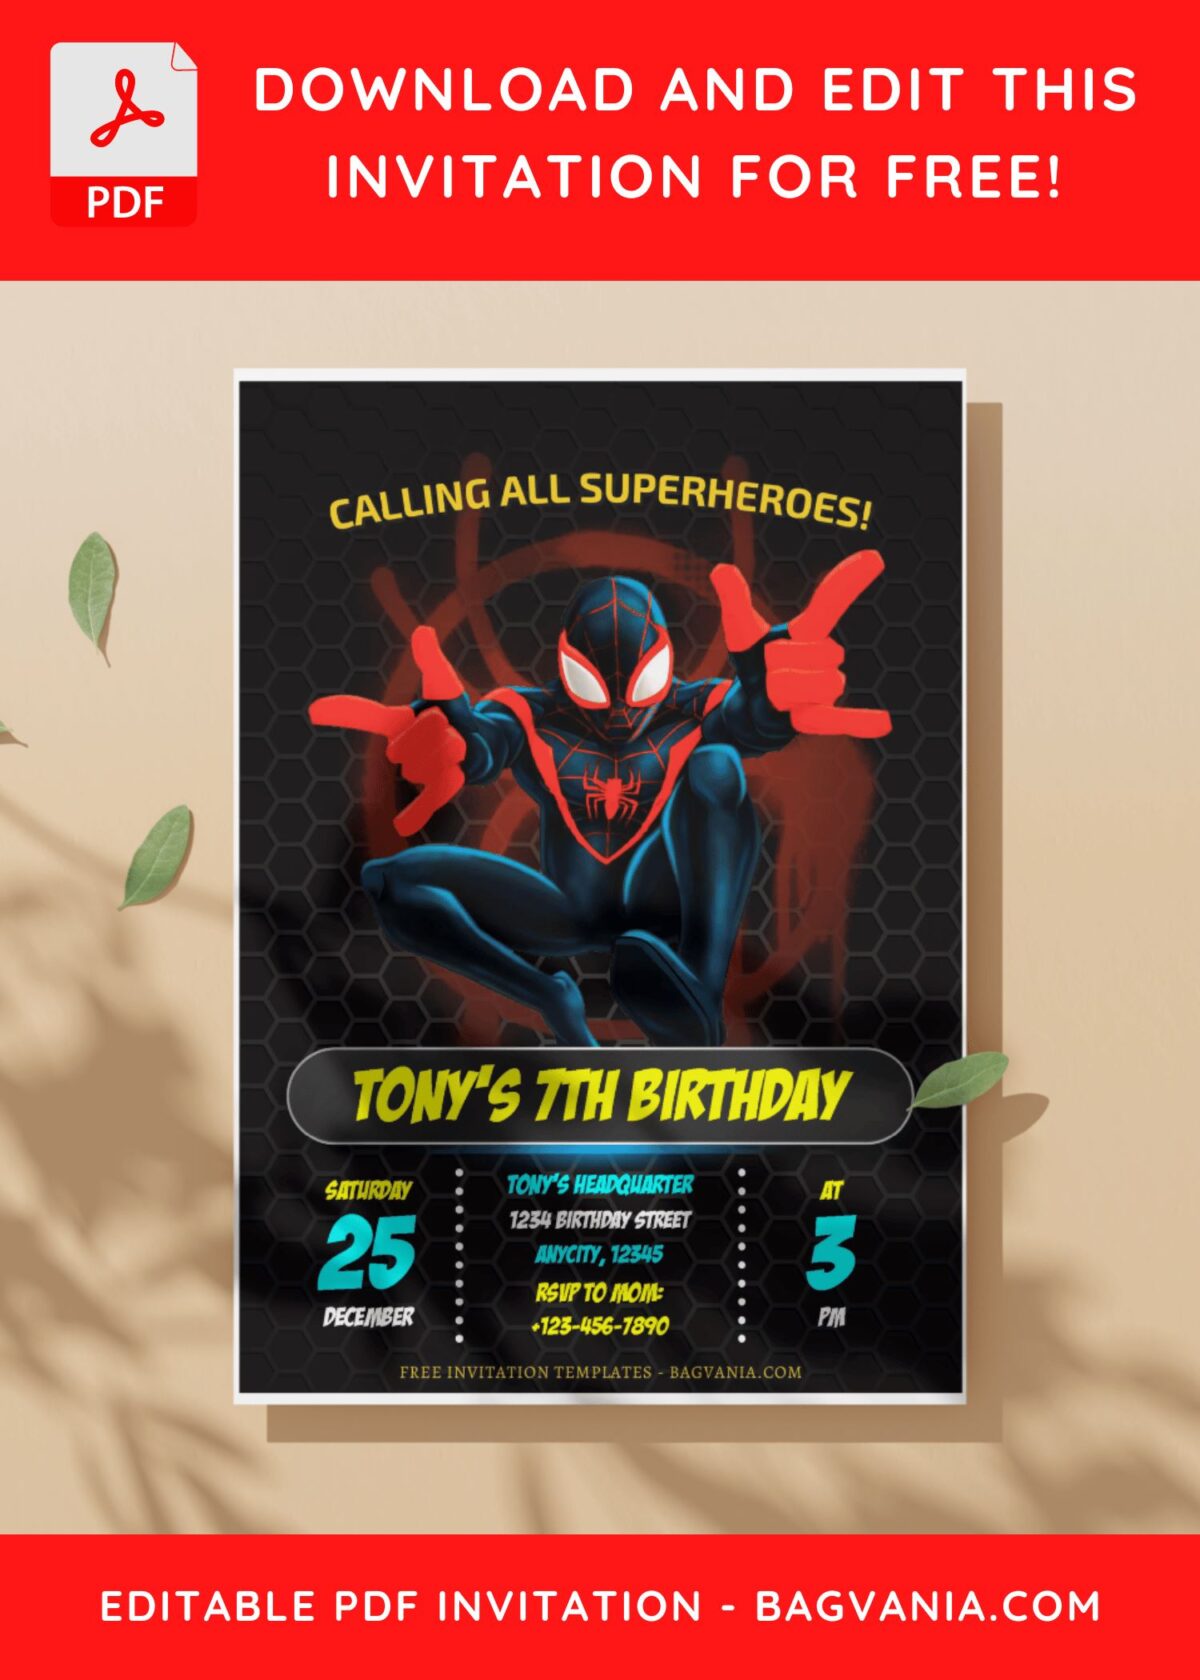 (Free Editable PDF) Ultimate Spiderman Miles Morales Birthday Invitation Templates I